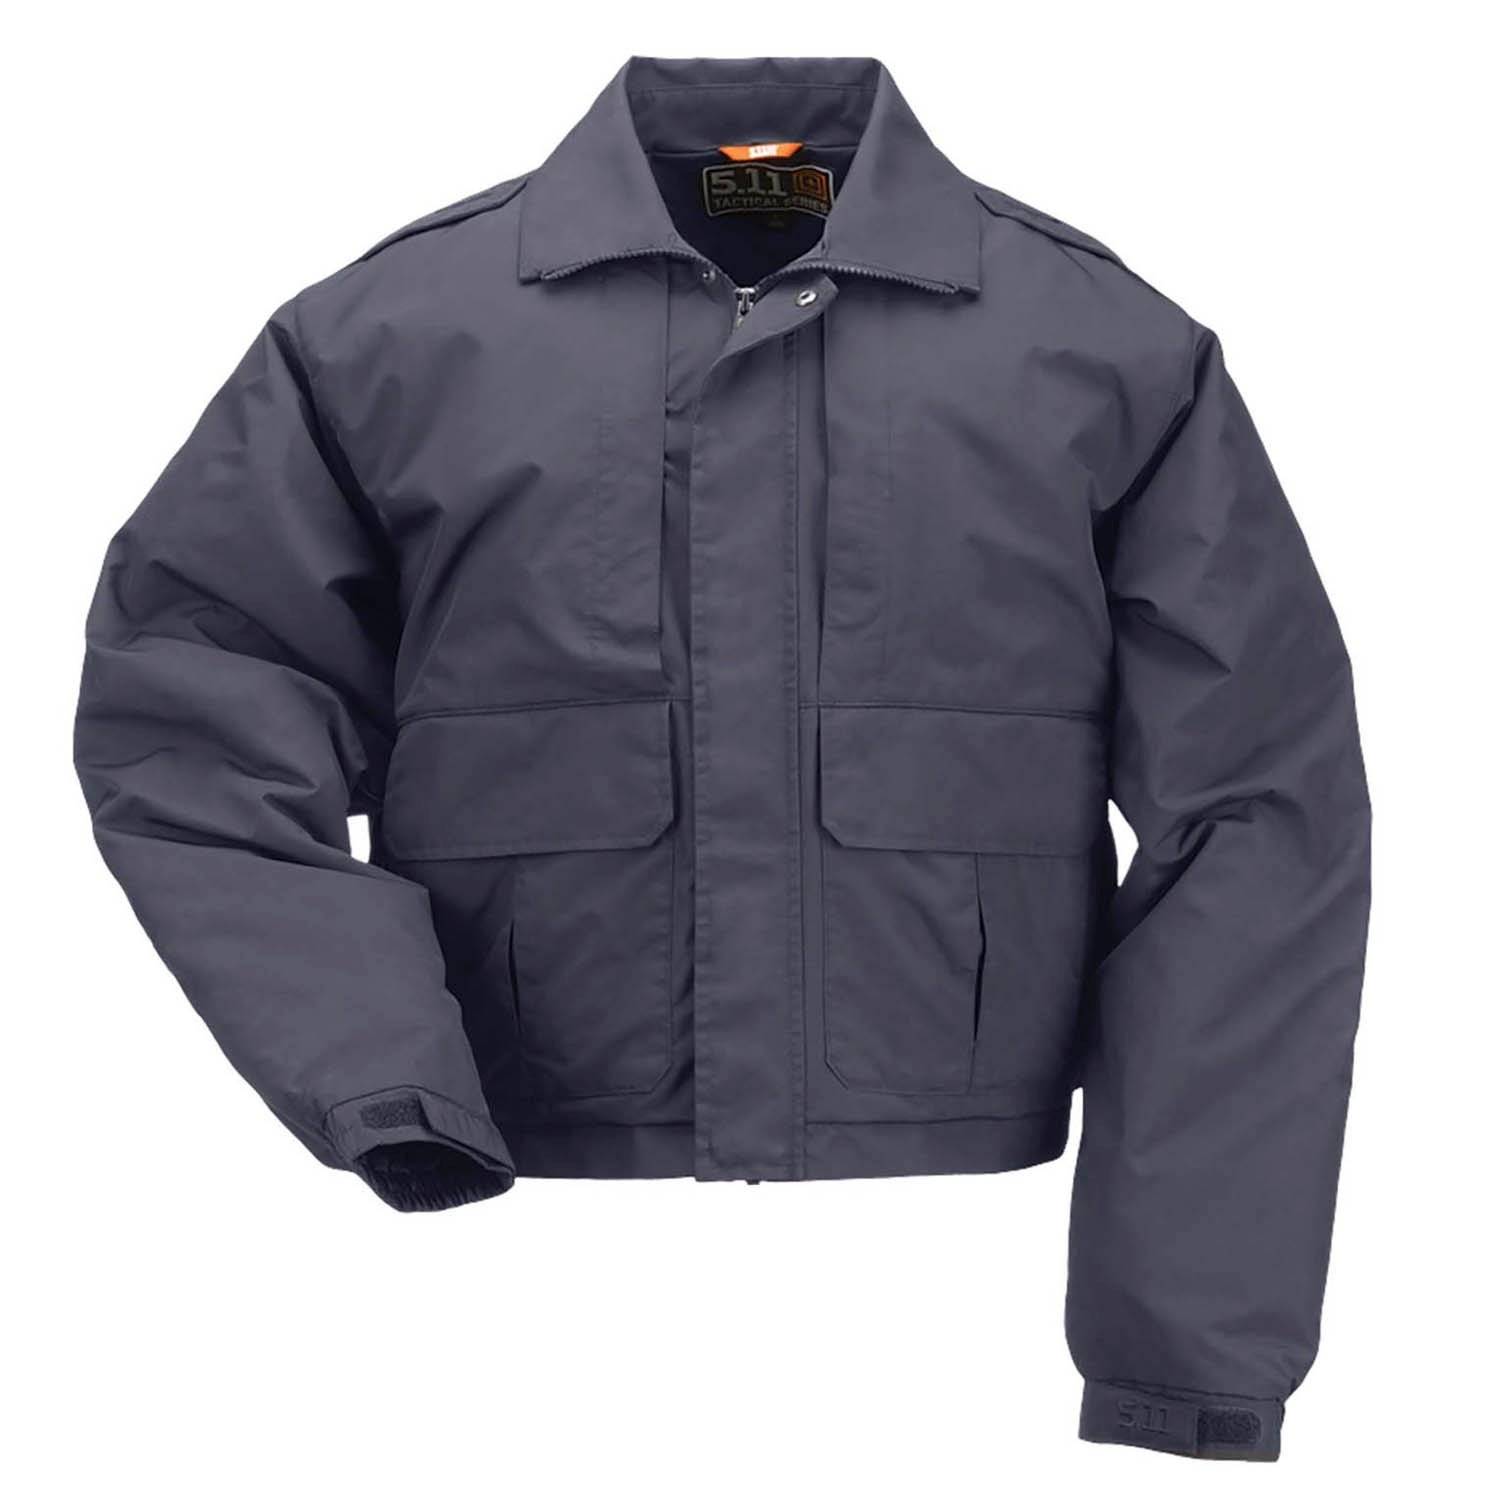 5-in-1 Jacket™: All-Weather Duty Jacket